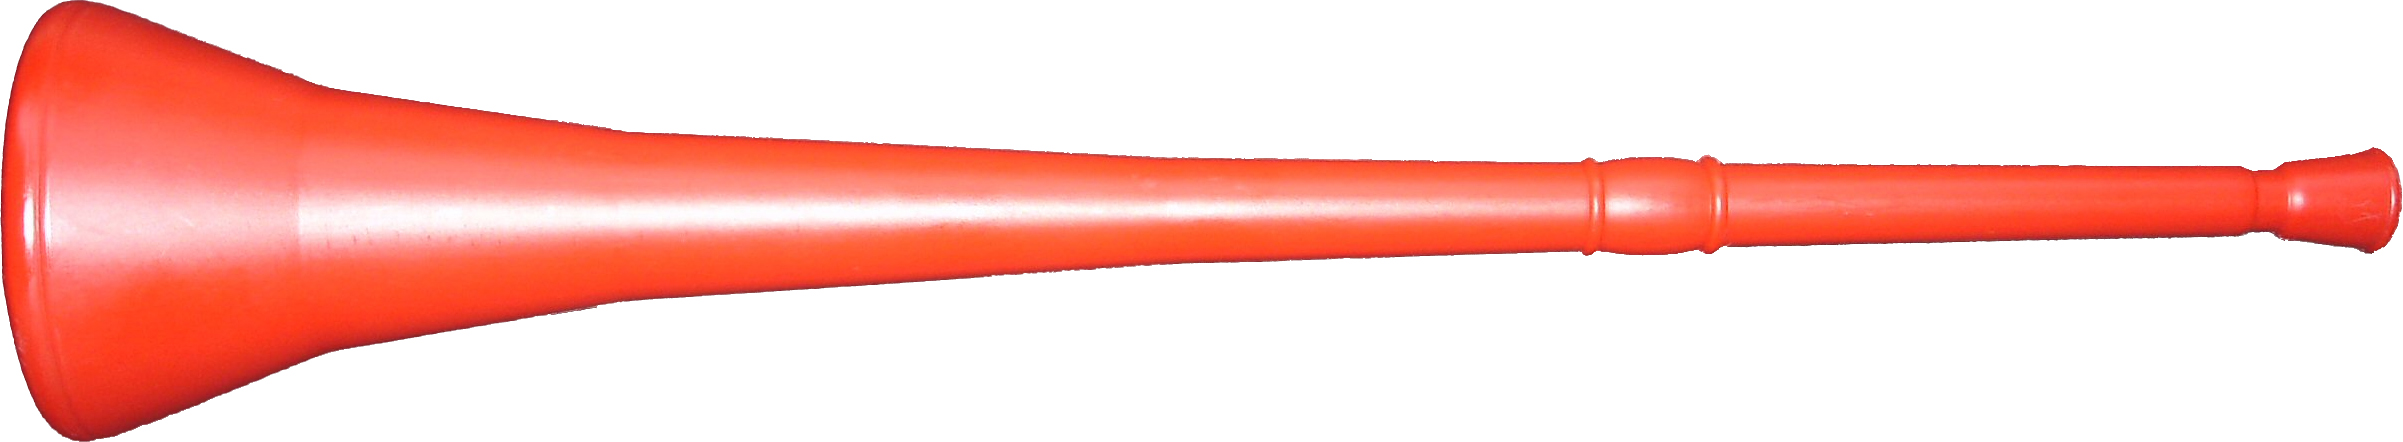 Vuvuzela_red.jpg